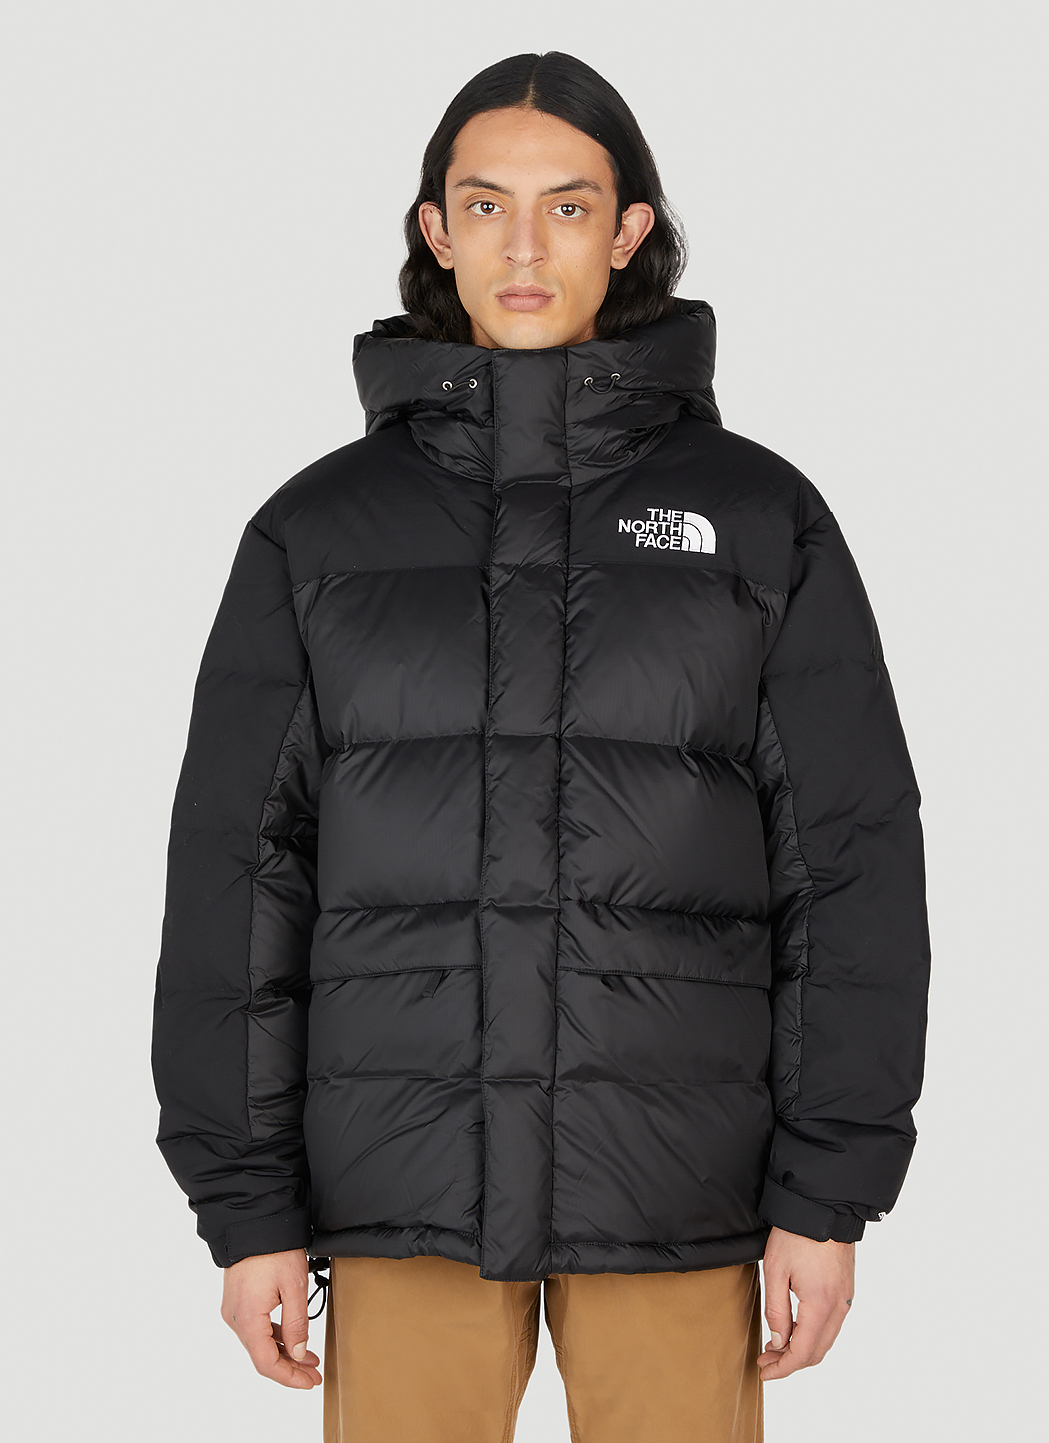 The North Face Himalayan Parka Jacket